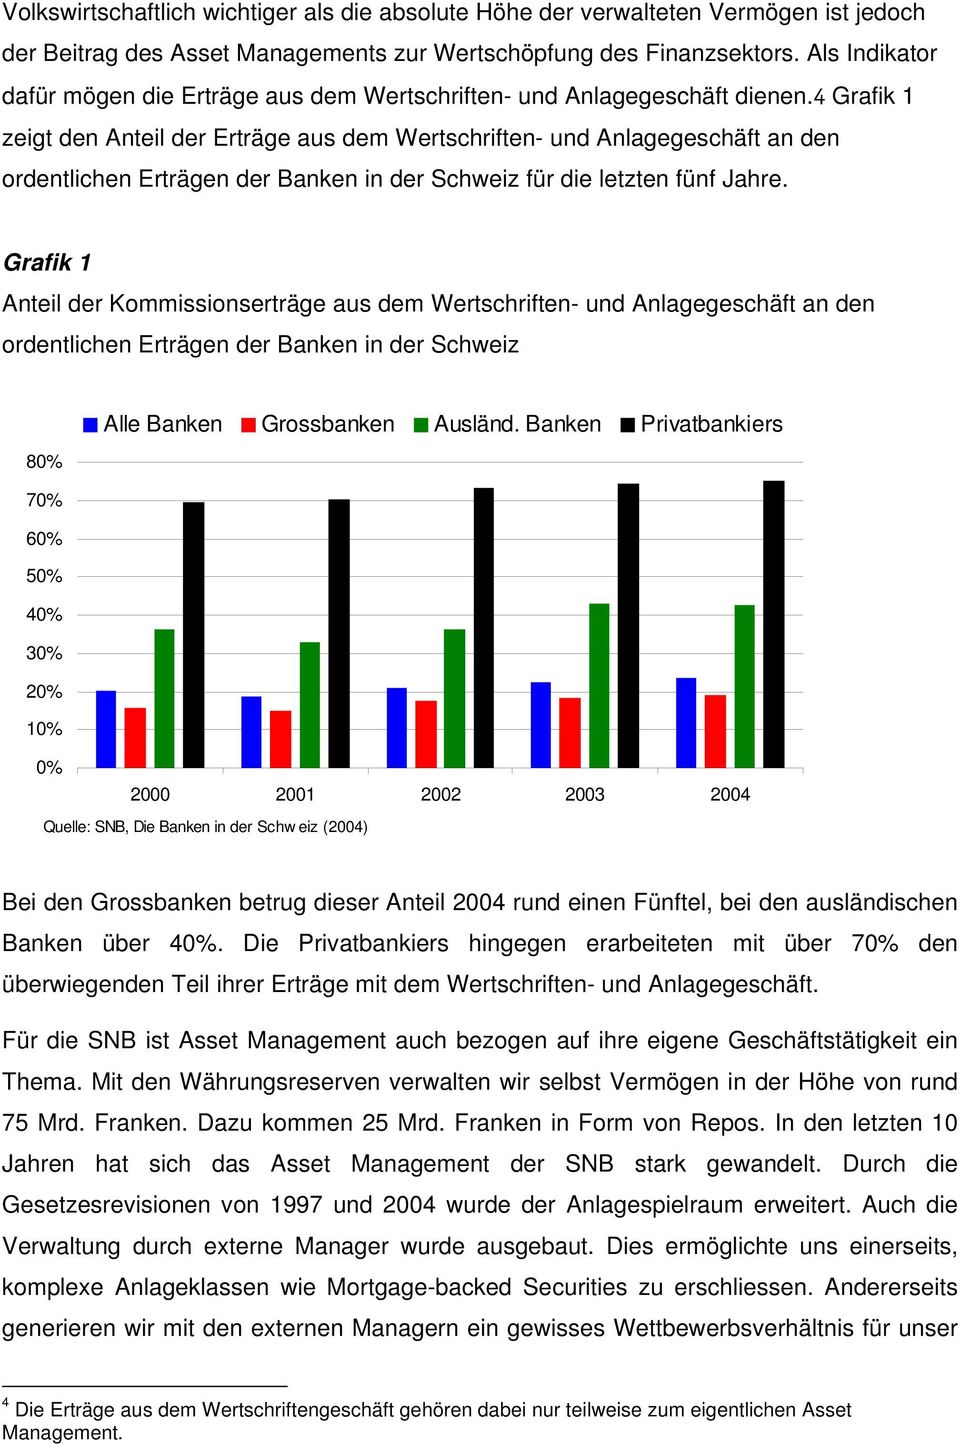 4 Grafik 1 zeigt den Anteil der Erträge aus dem Wertschriften- und Anlagegeschäft an den ordentlichen Erträgen der Banken in der Schweiz für die letzten fünf Jahre.